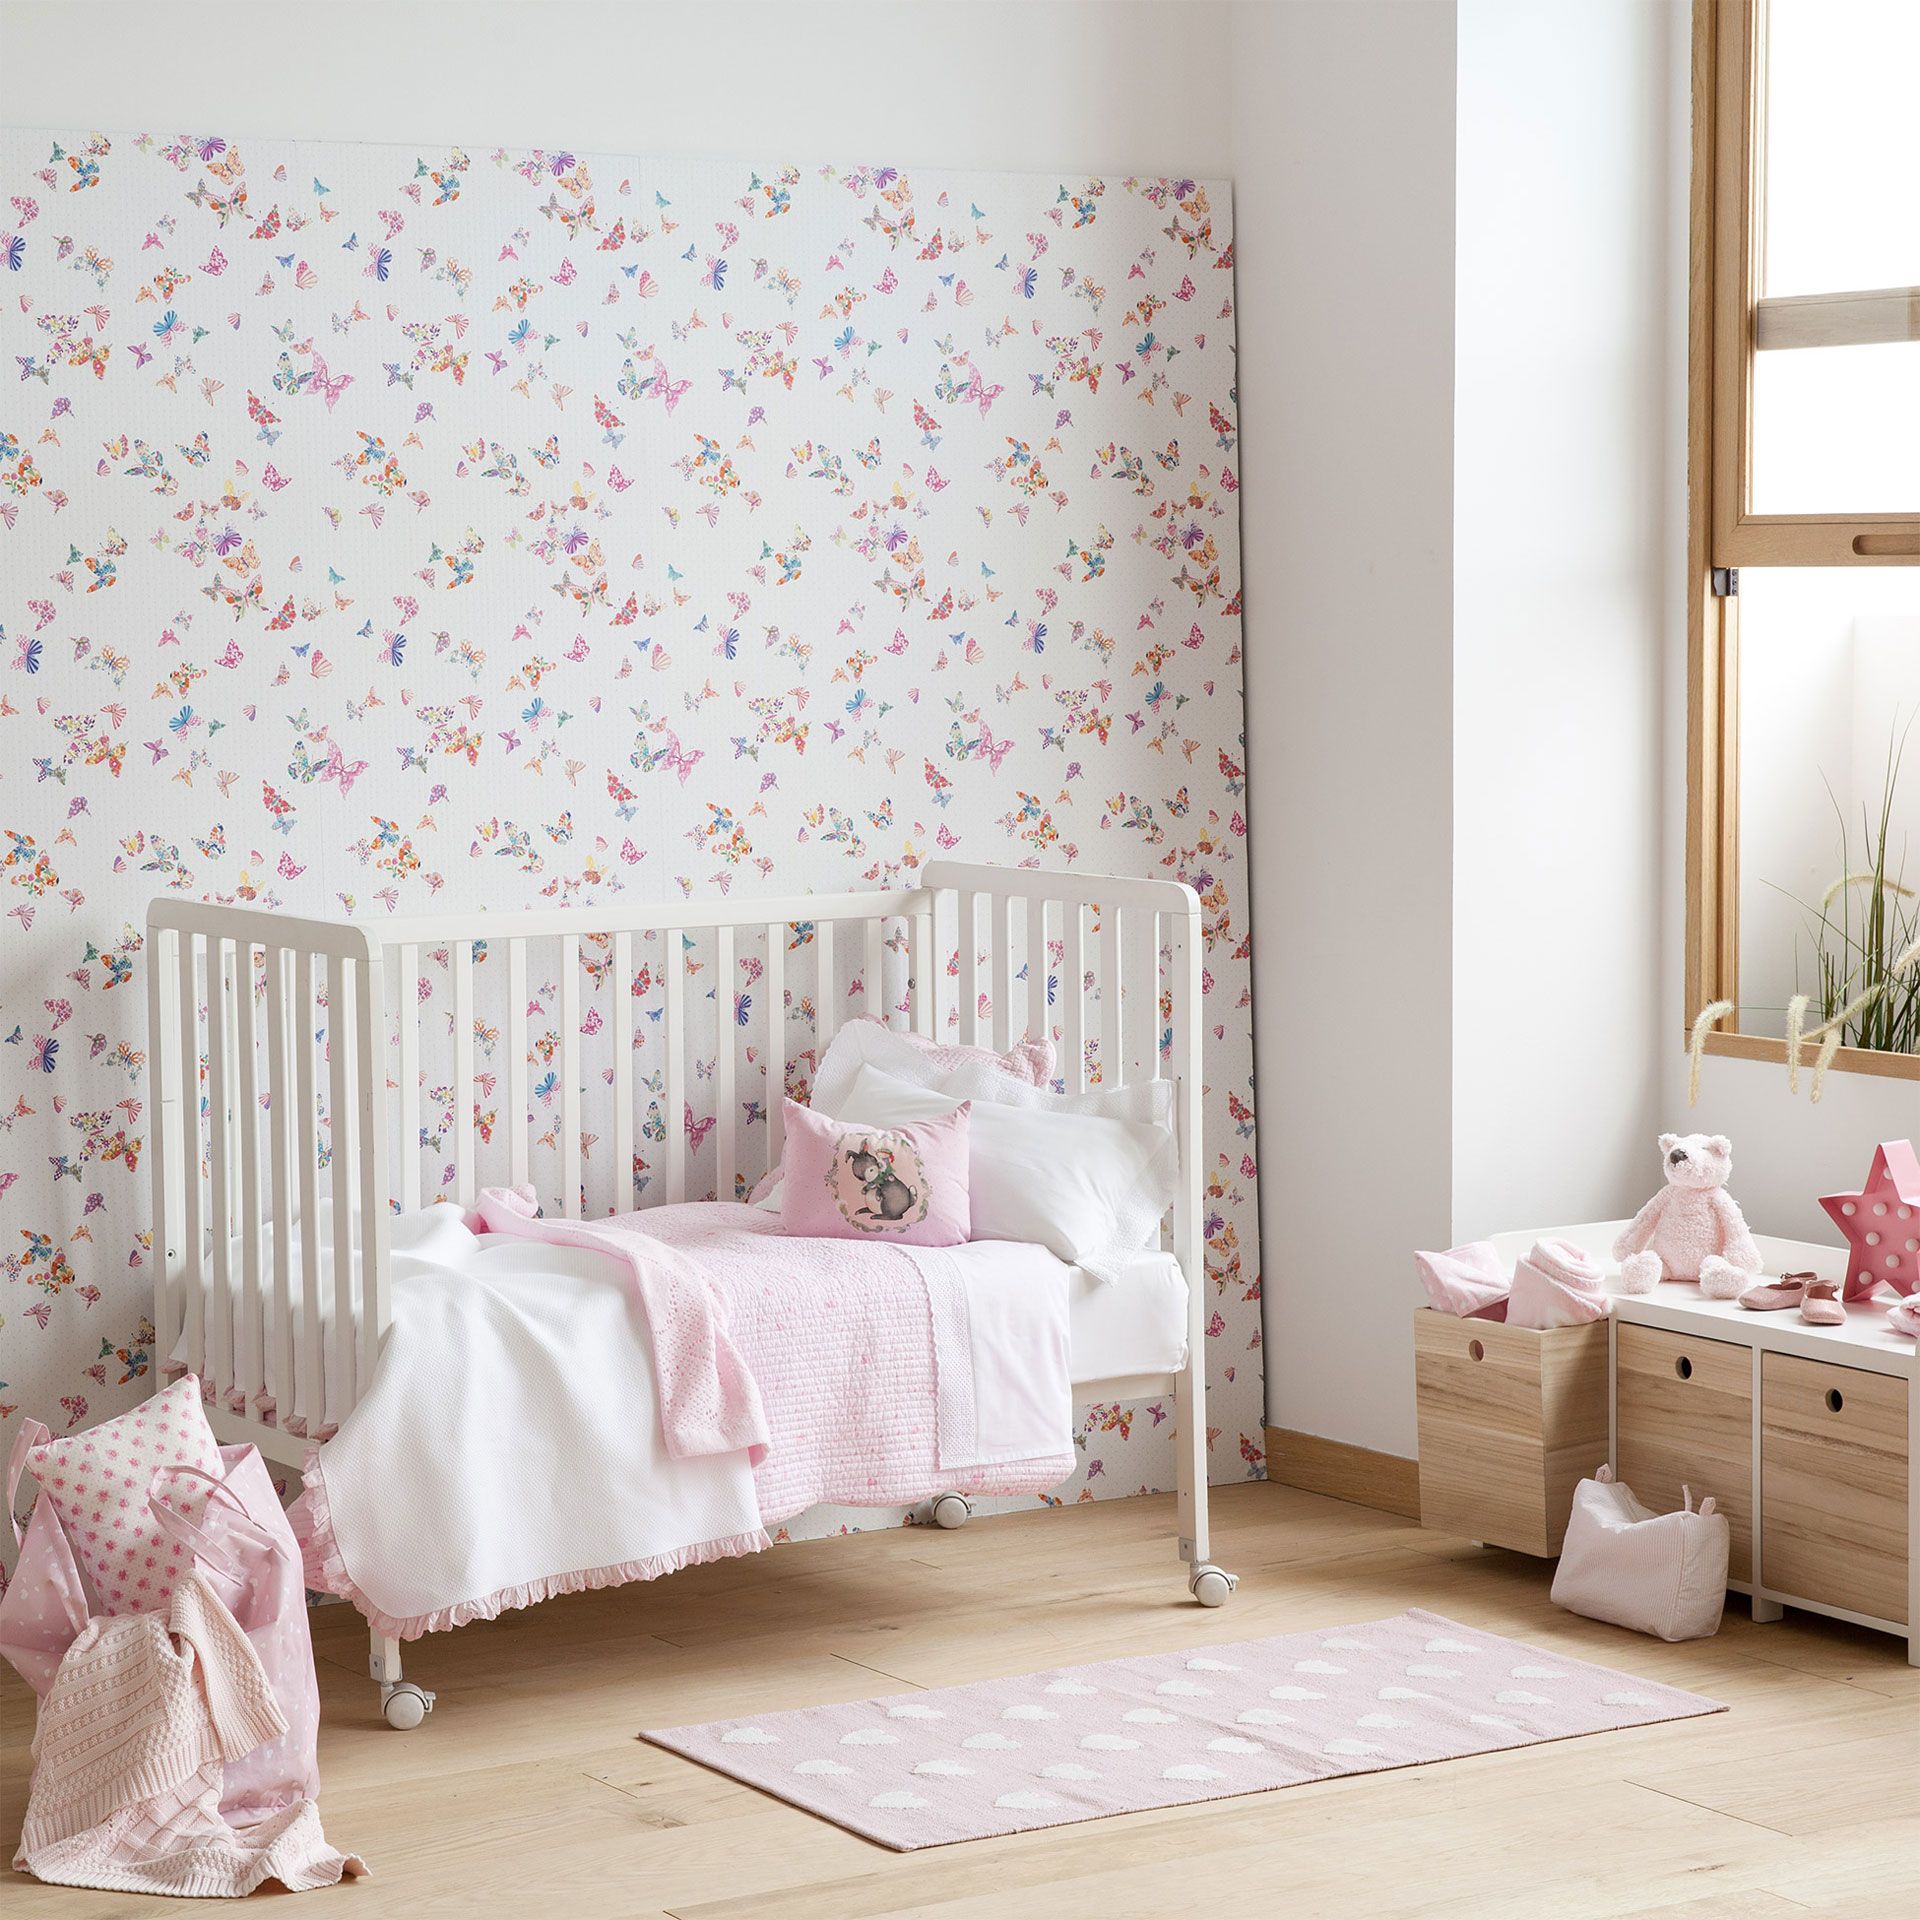 zara home wallpaper,möbel,produkt,rosa,zimmer,wand